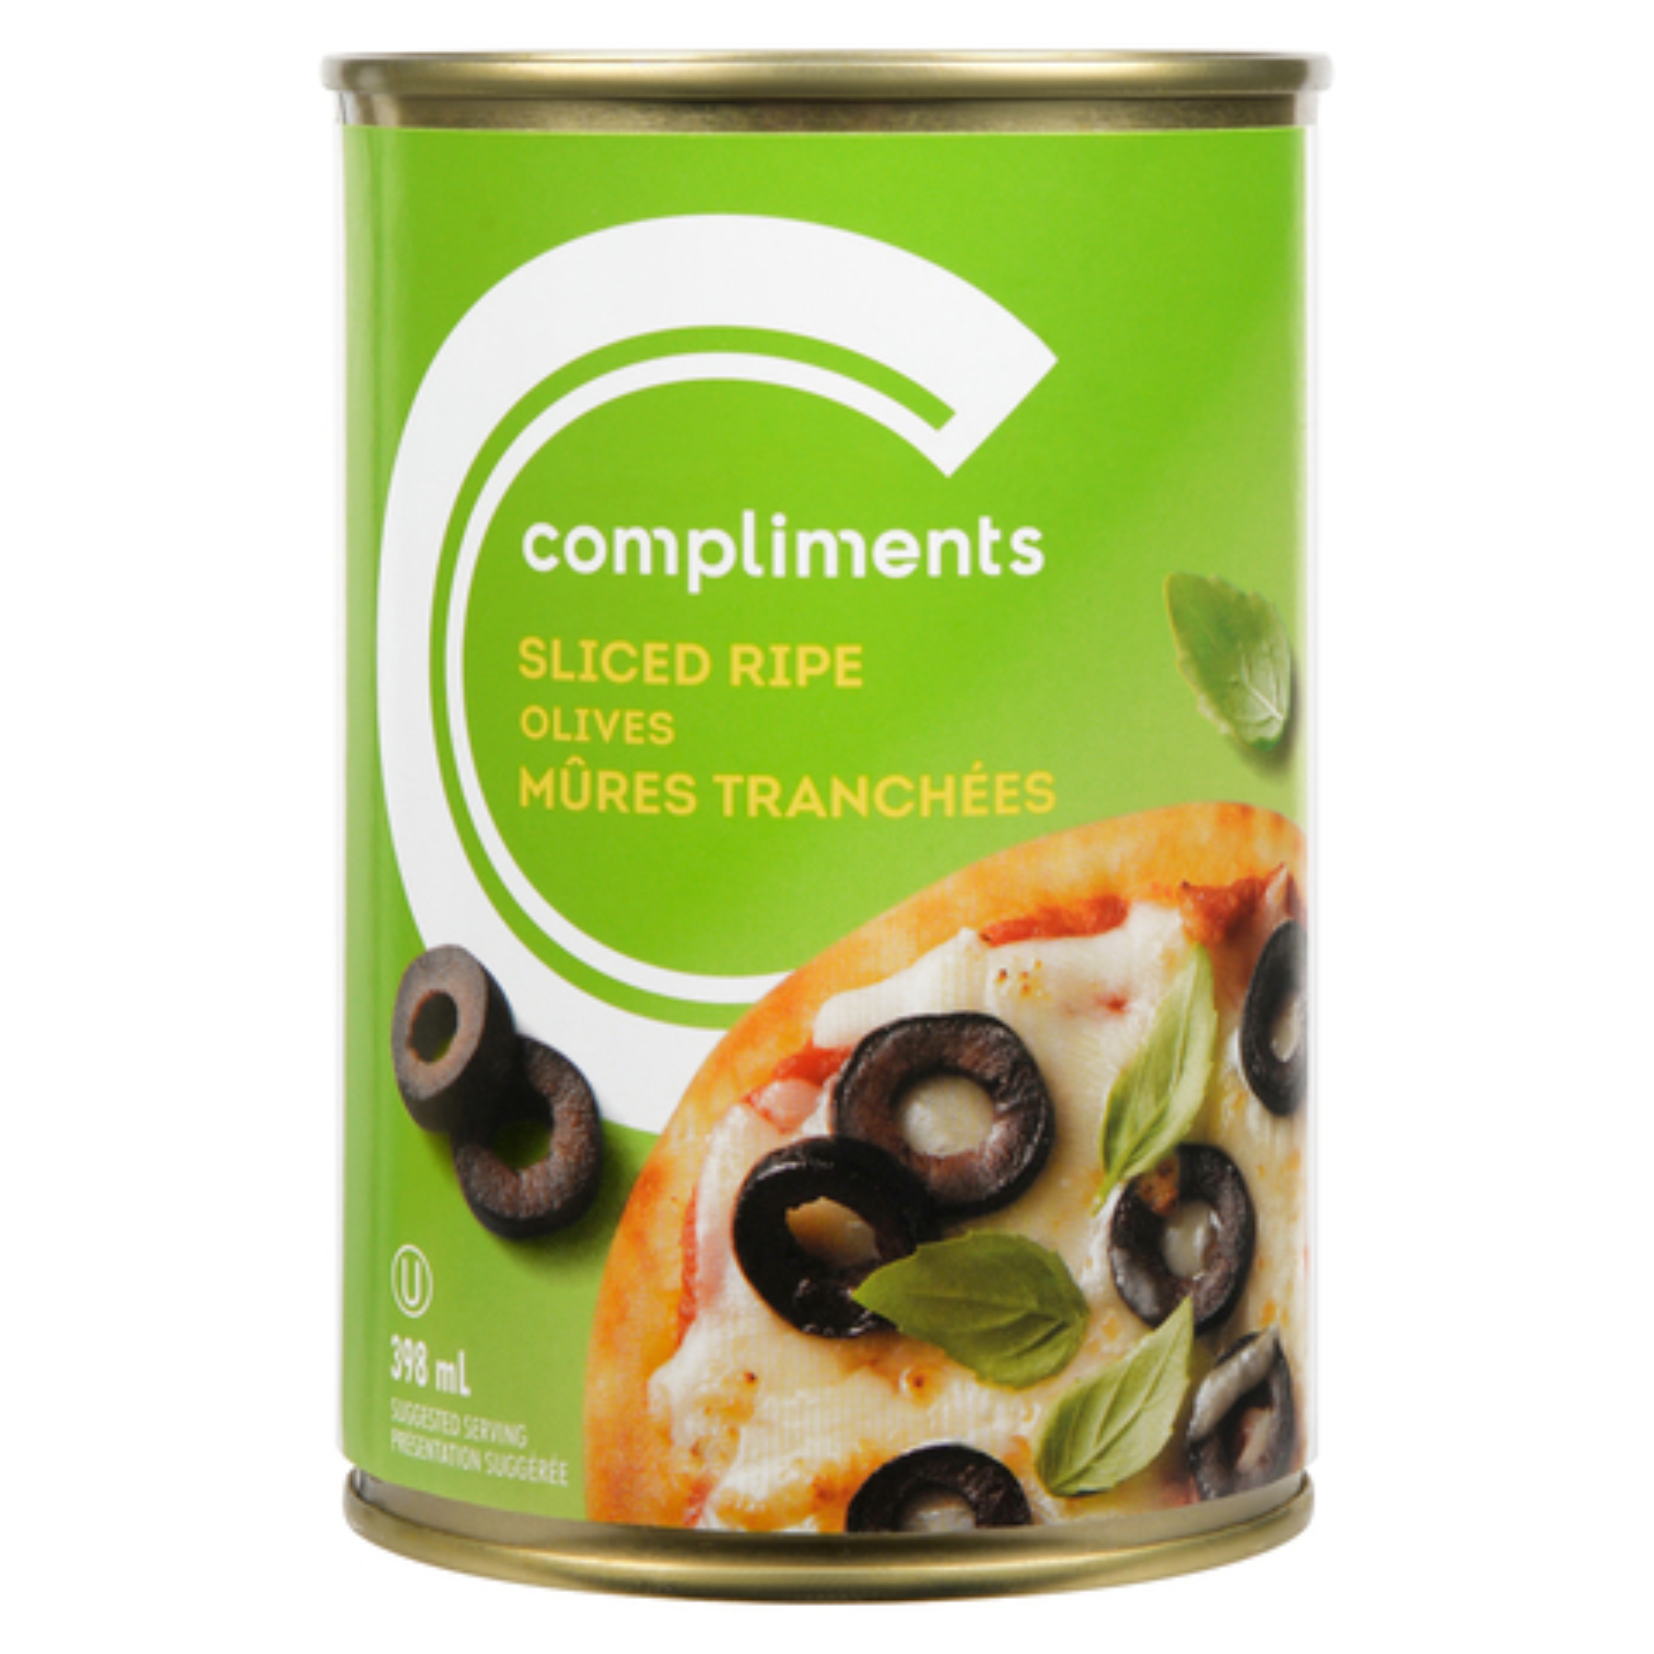 Compliments Sliced Black Olives 398ml